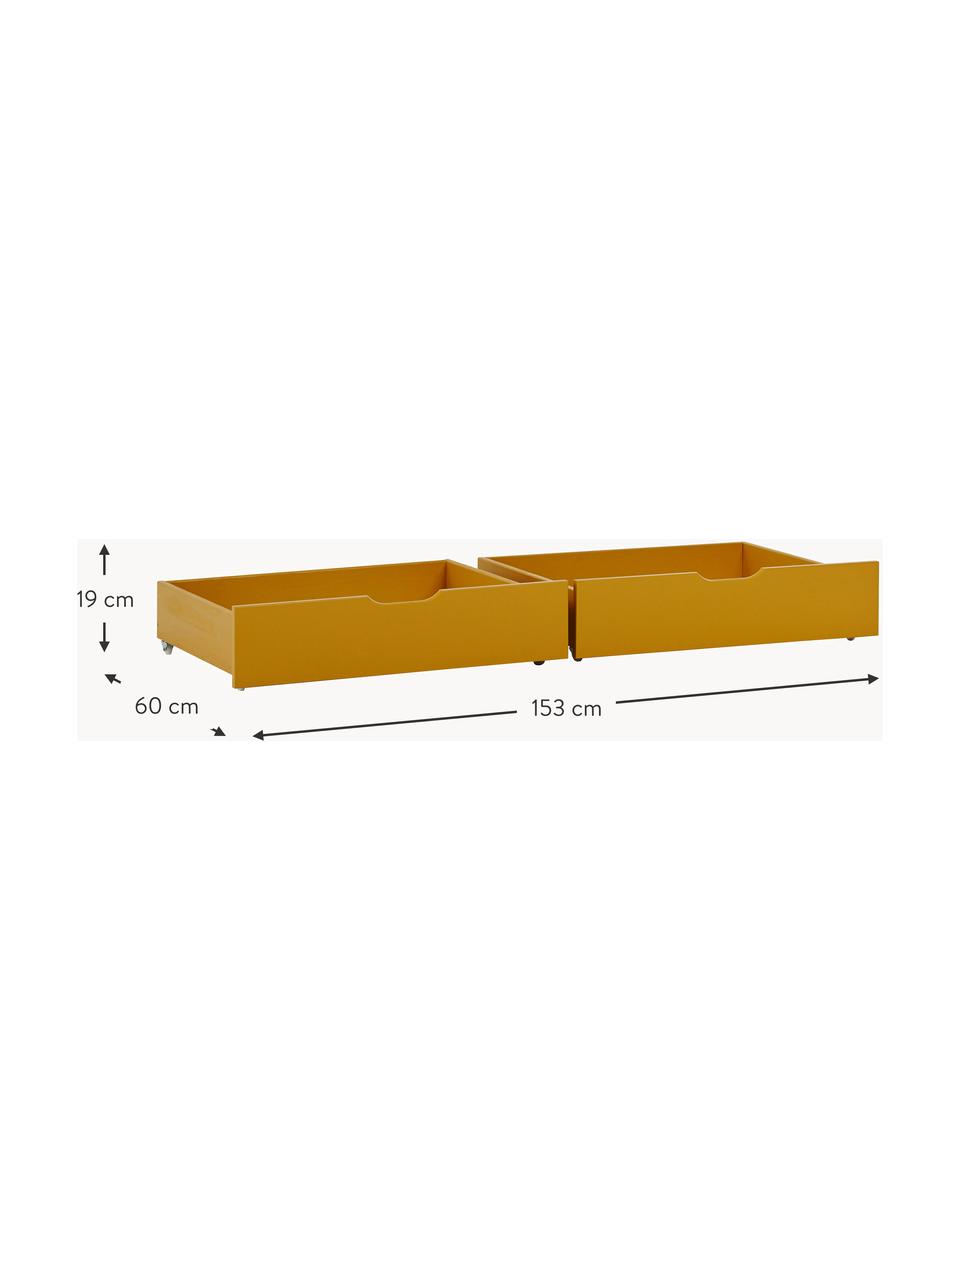 Zásuvky pod postel Eco Comfort, 2 ks, Dřevovláknitá deska střední hustoty (MDF), certifikace FSC, Dřevo, lakované okrově žlutou, Š 153 cm, H 60 cm